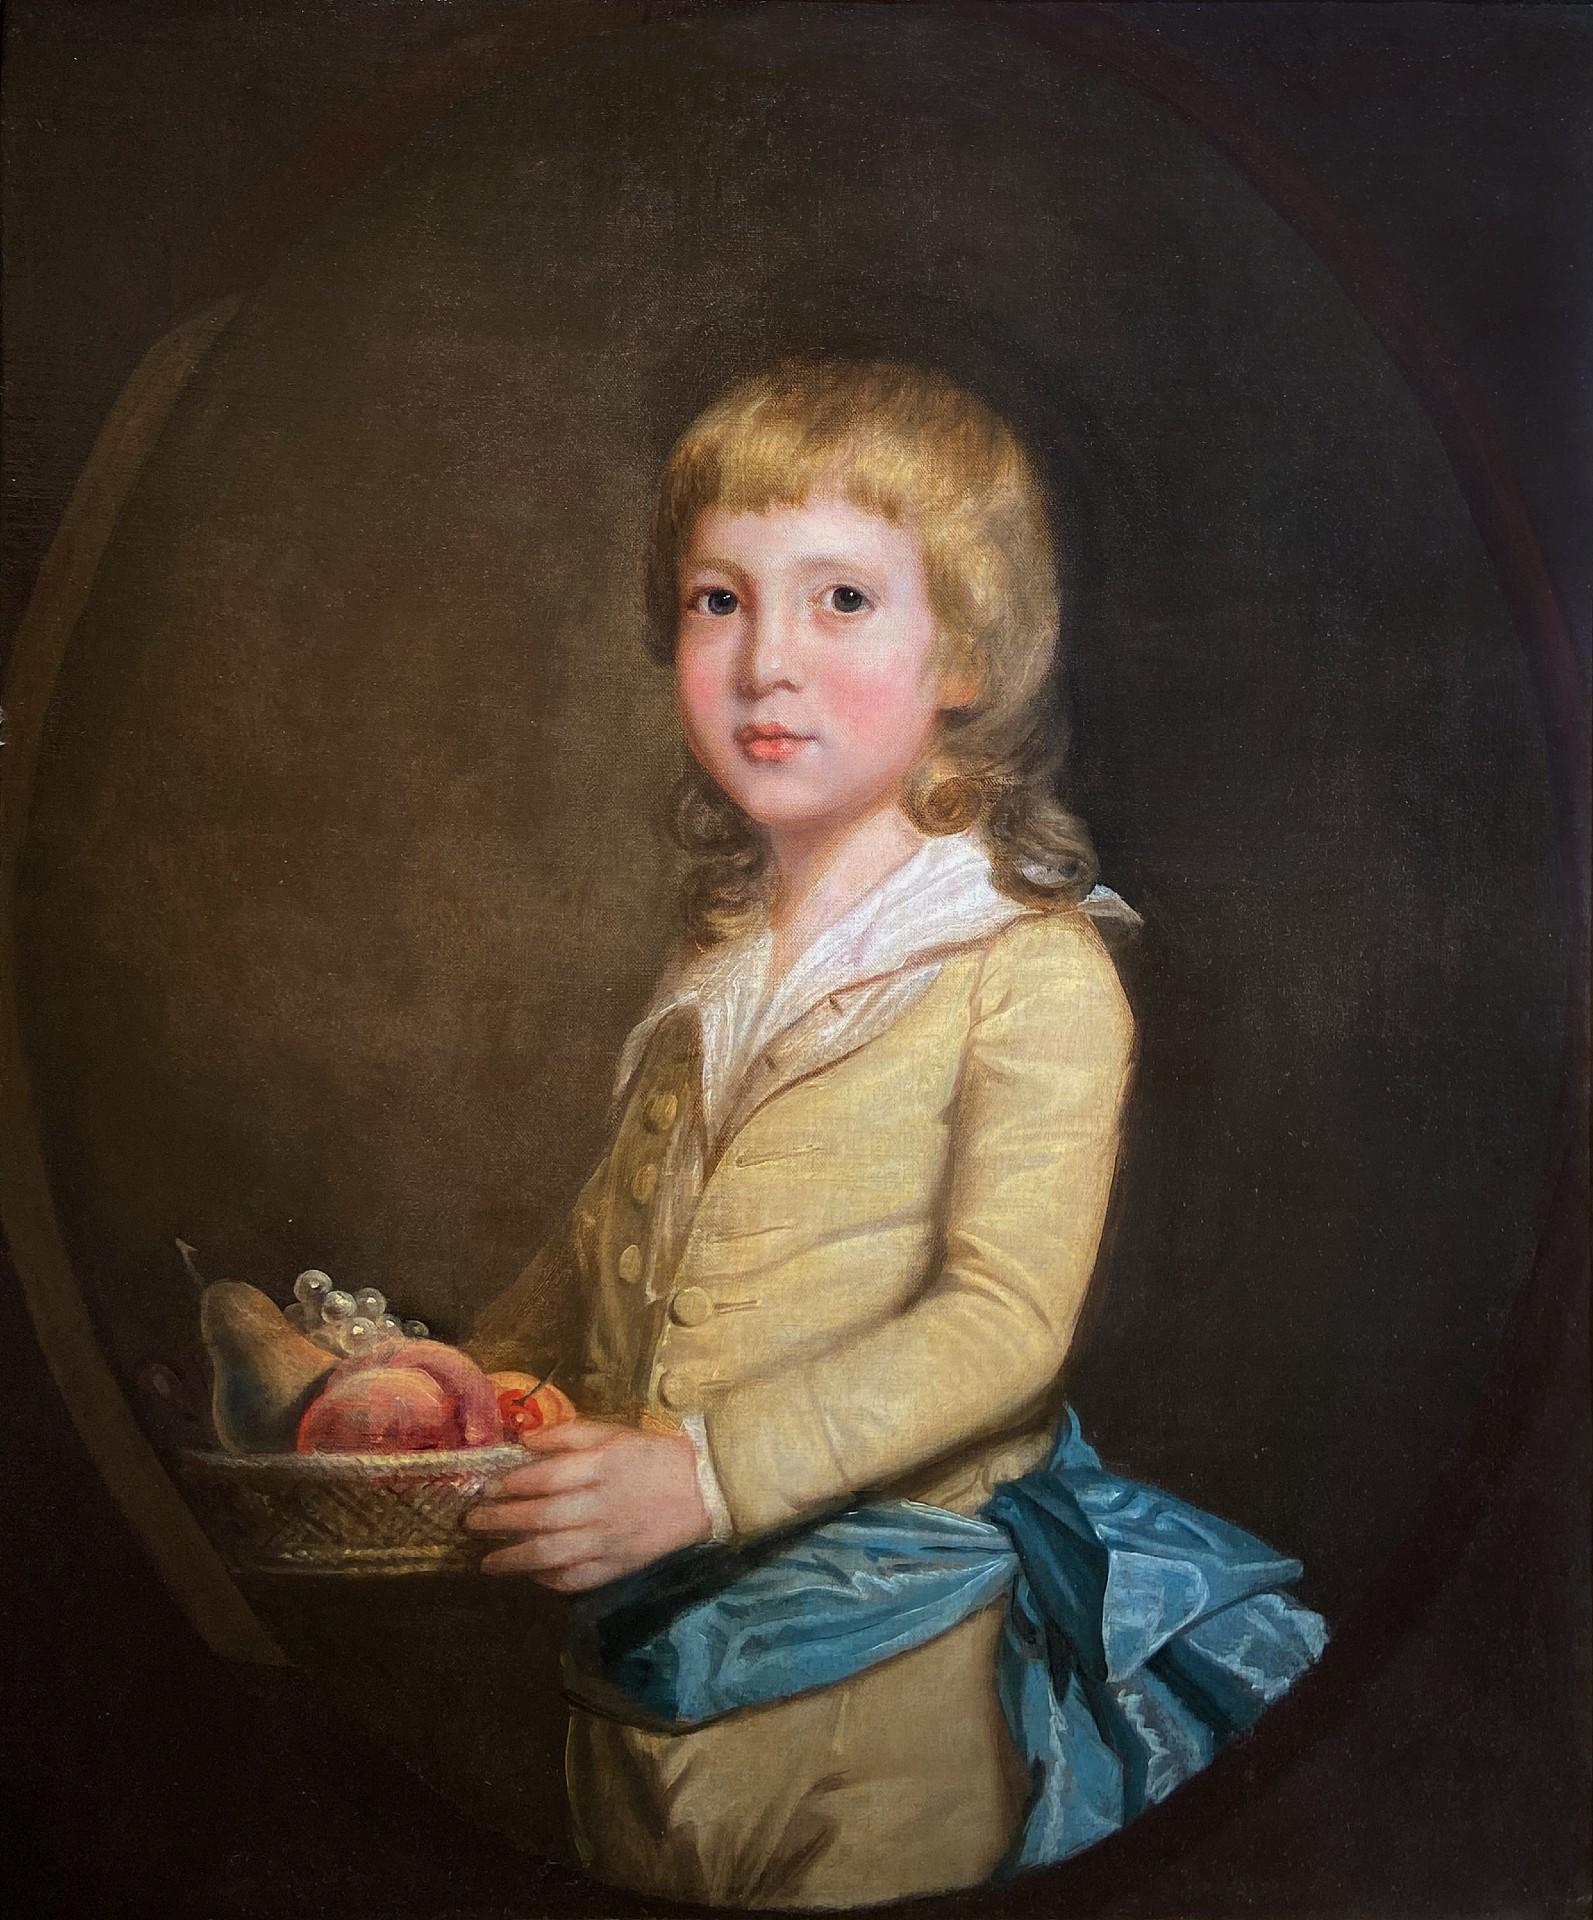 Sir William Beechey Portrait Painting – Porträt eines jungen Jungen, der einen Obstkorb trägt, Öl auf Leinwand, 18. Jahrhundert